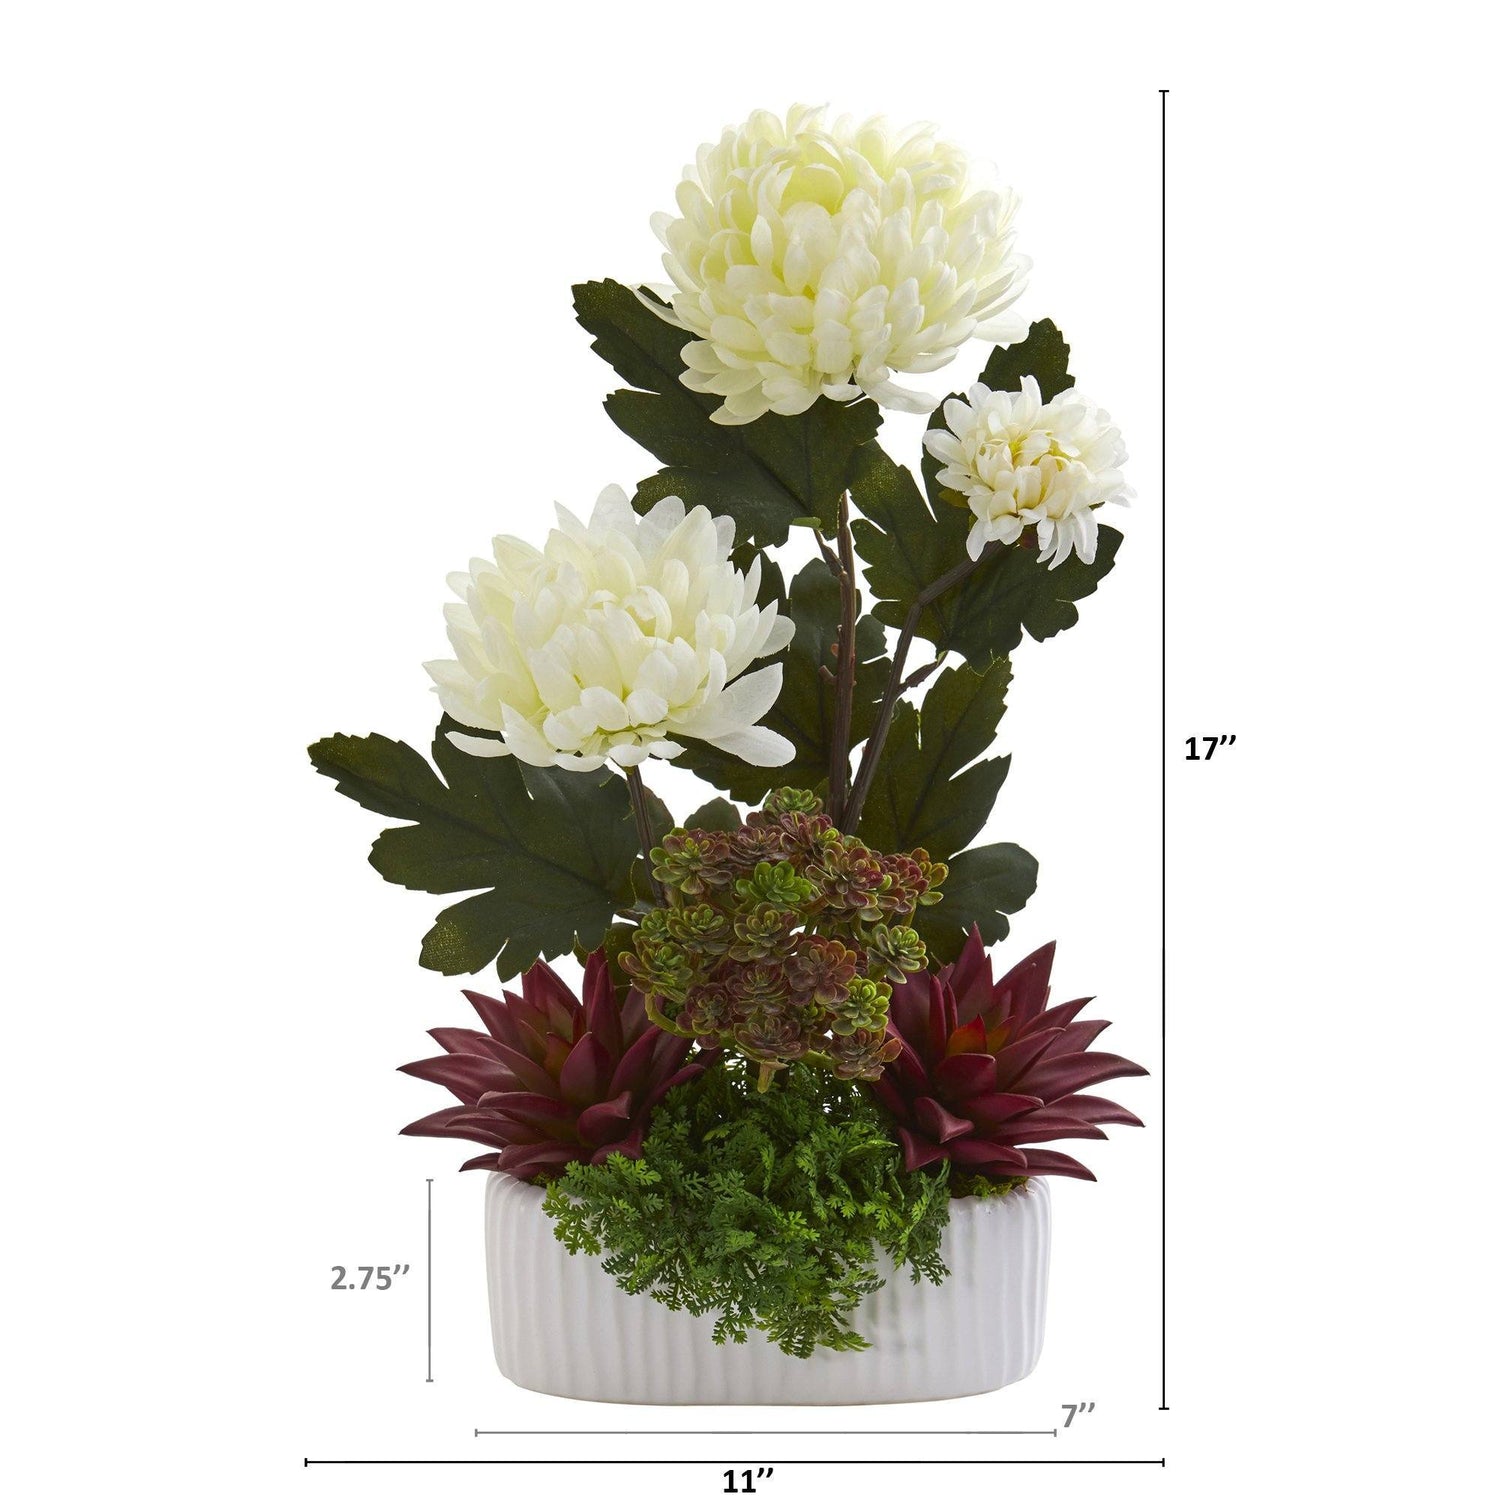 17” Mum and Succulent Artificial Arrangement in White Vase